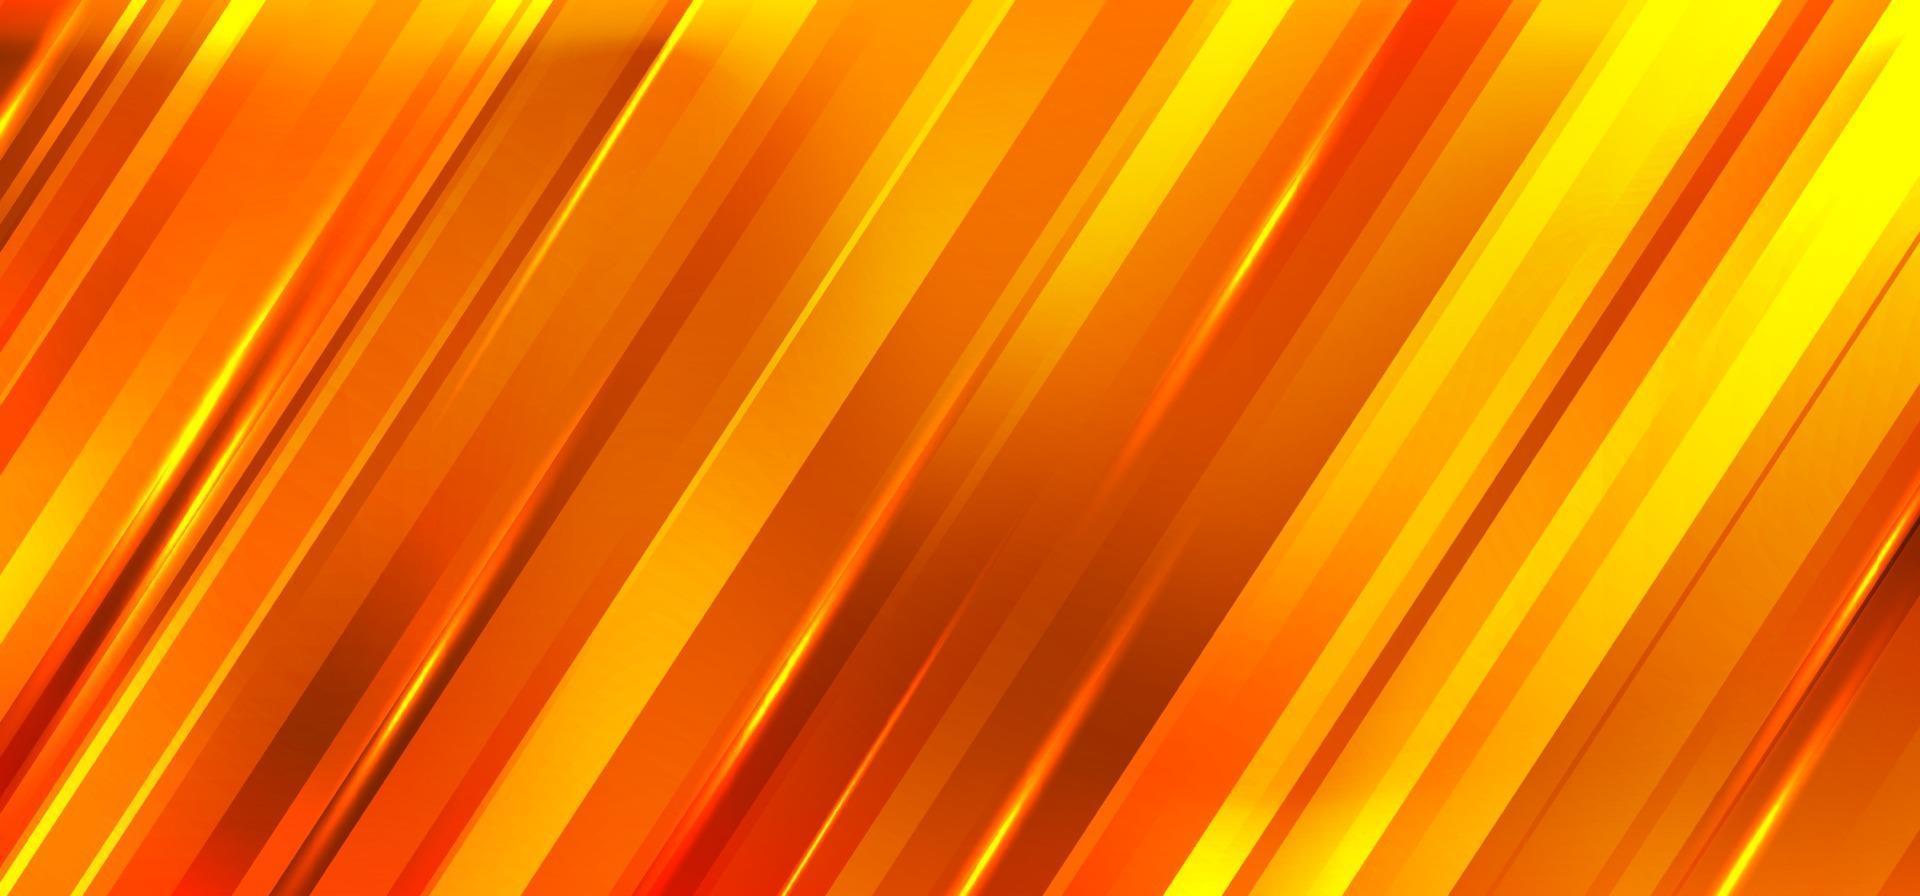 abstrakte orange und gelbe Farbverlaufsdiagonalstreifen bewegen unscharfen Hintergrund vektor